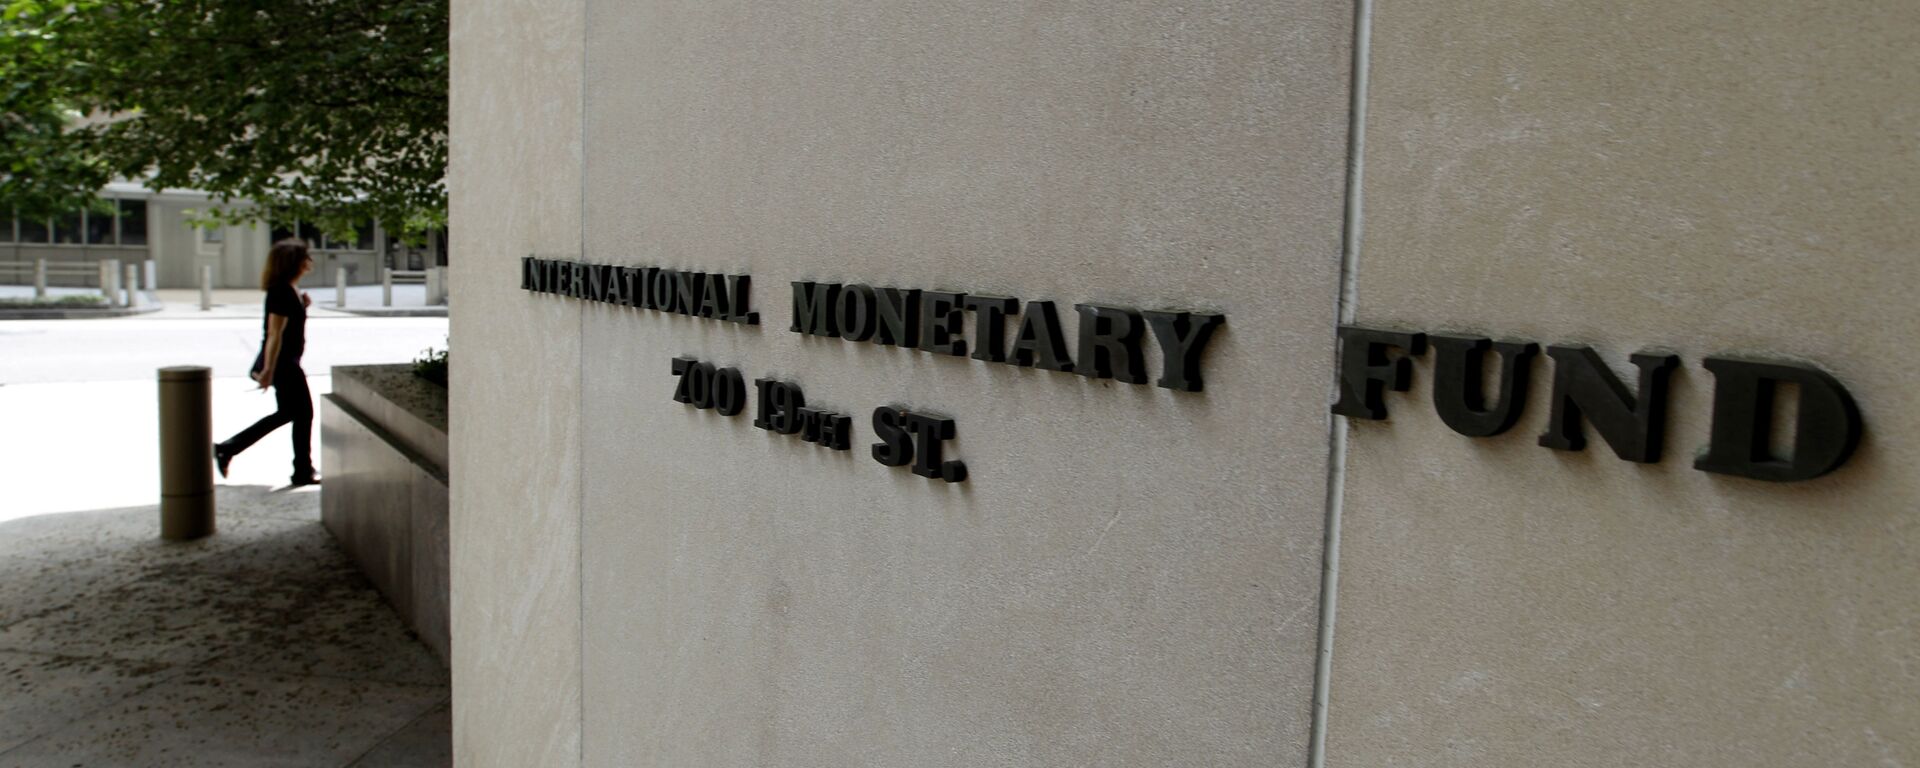 Международный Валютный Фонд, главный офис в Вашингтоне - Sputnik Грузия, 1920, 11.10.2022